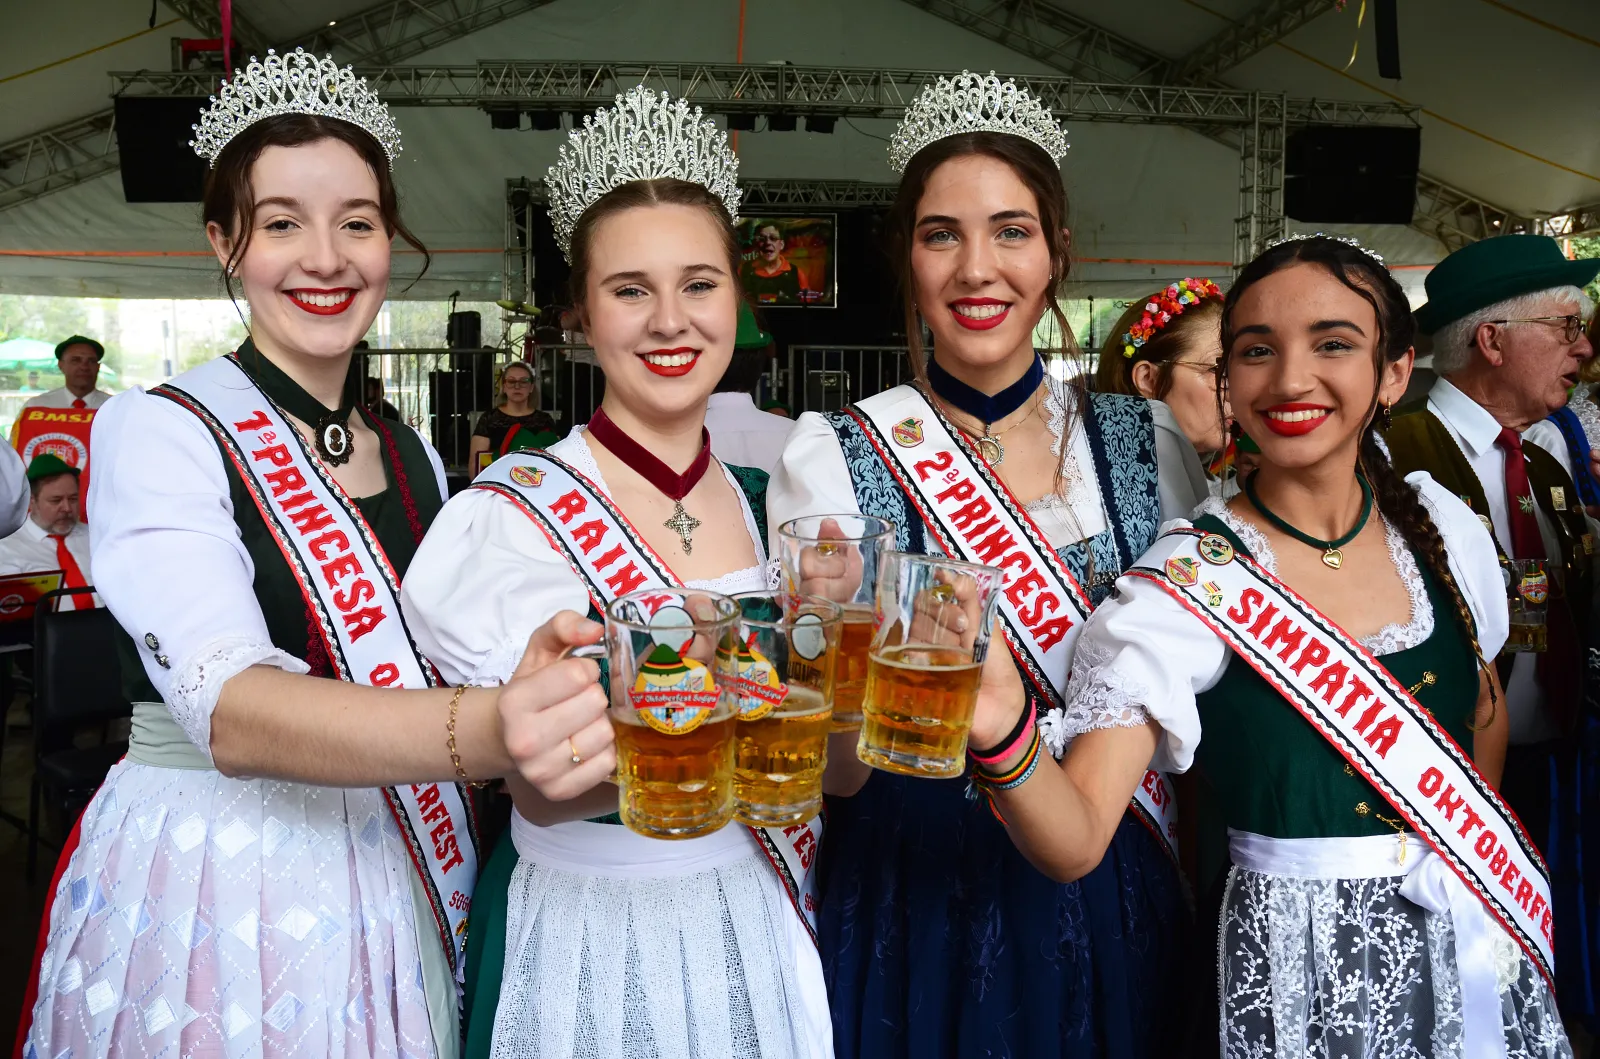 Sogipa realiza a primeira edio do Encontro das Cortes da Oktoberfest. Objetivo  reunir rainhas, princesas e simpatias eleitas pela festa desde 1980